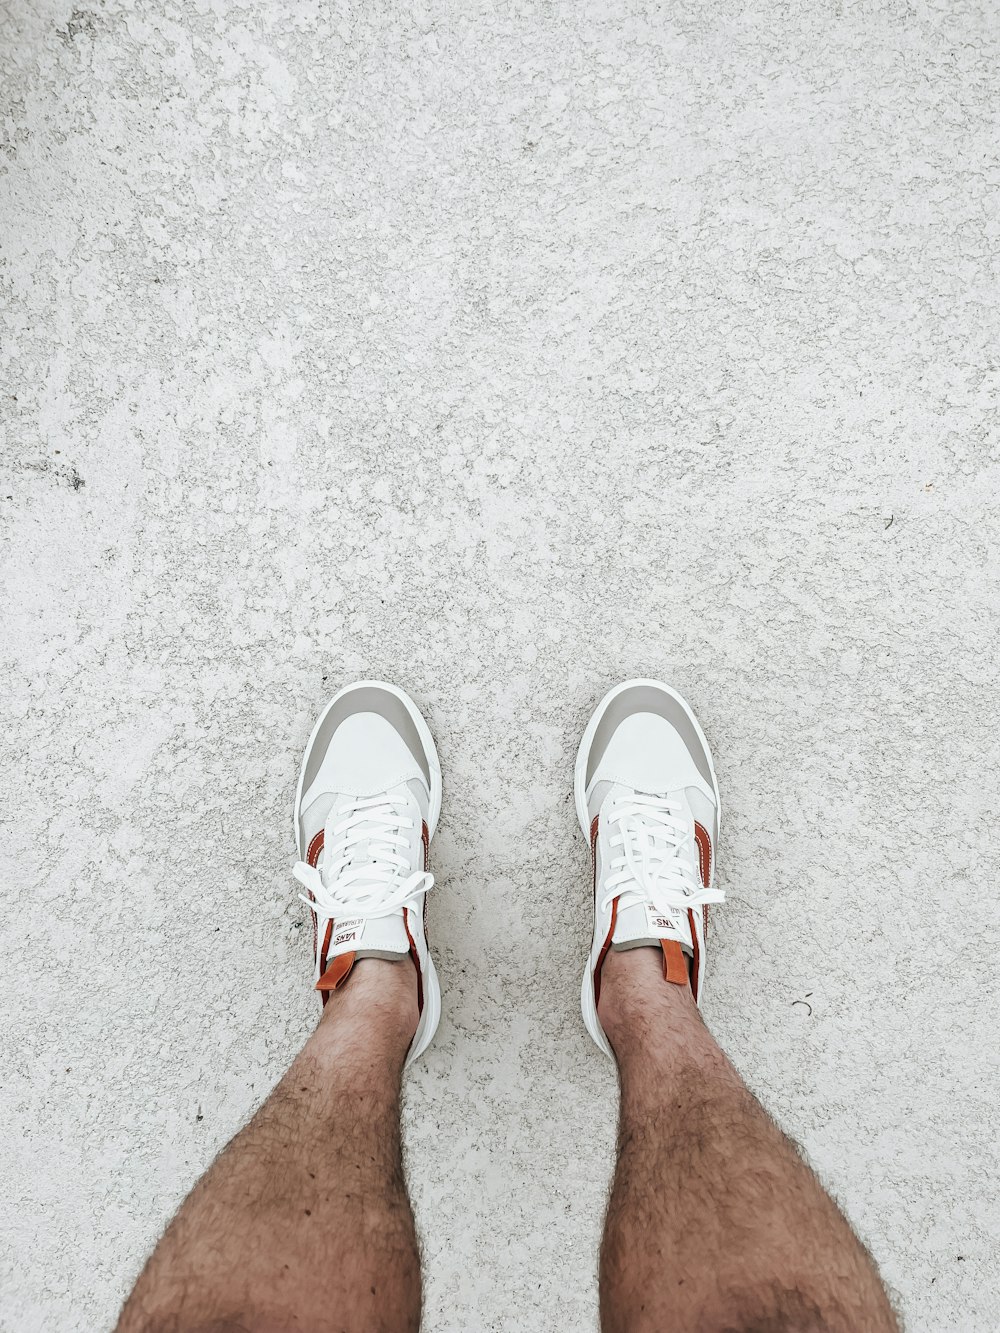 Le gambe di una persona con le scarpe bianche